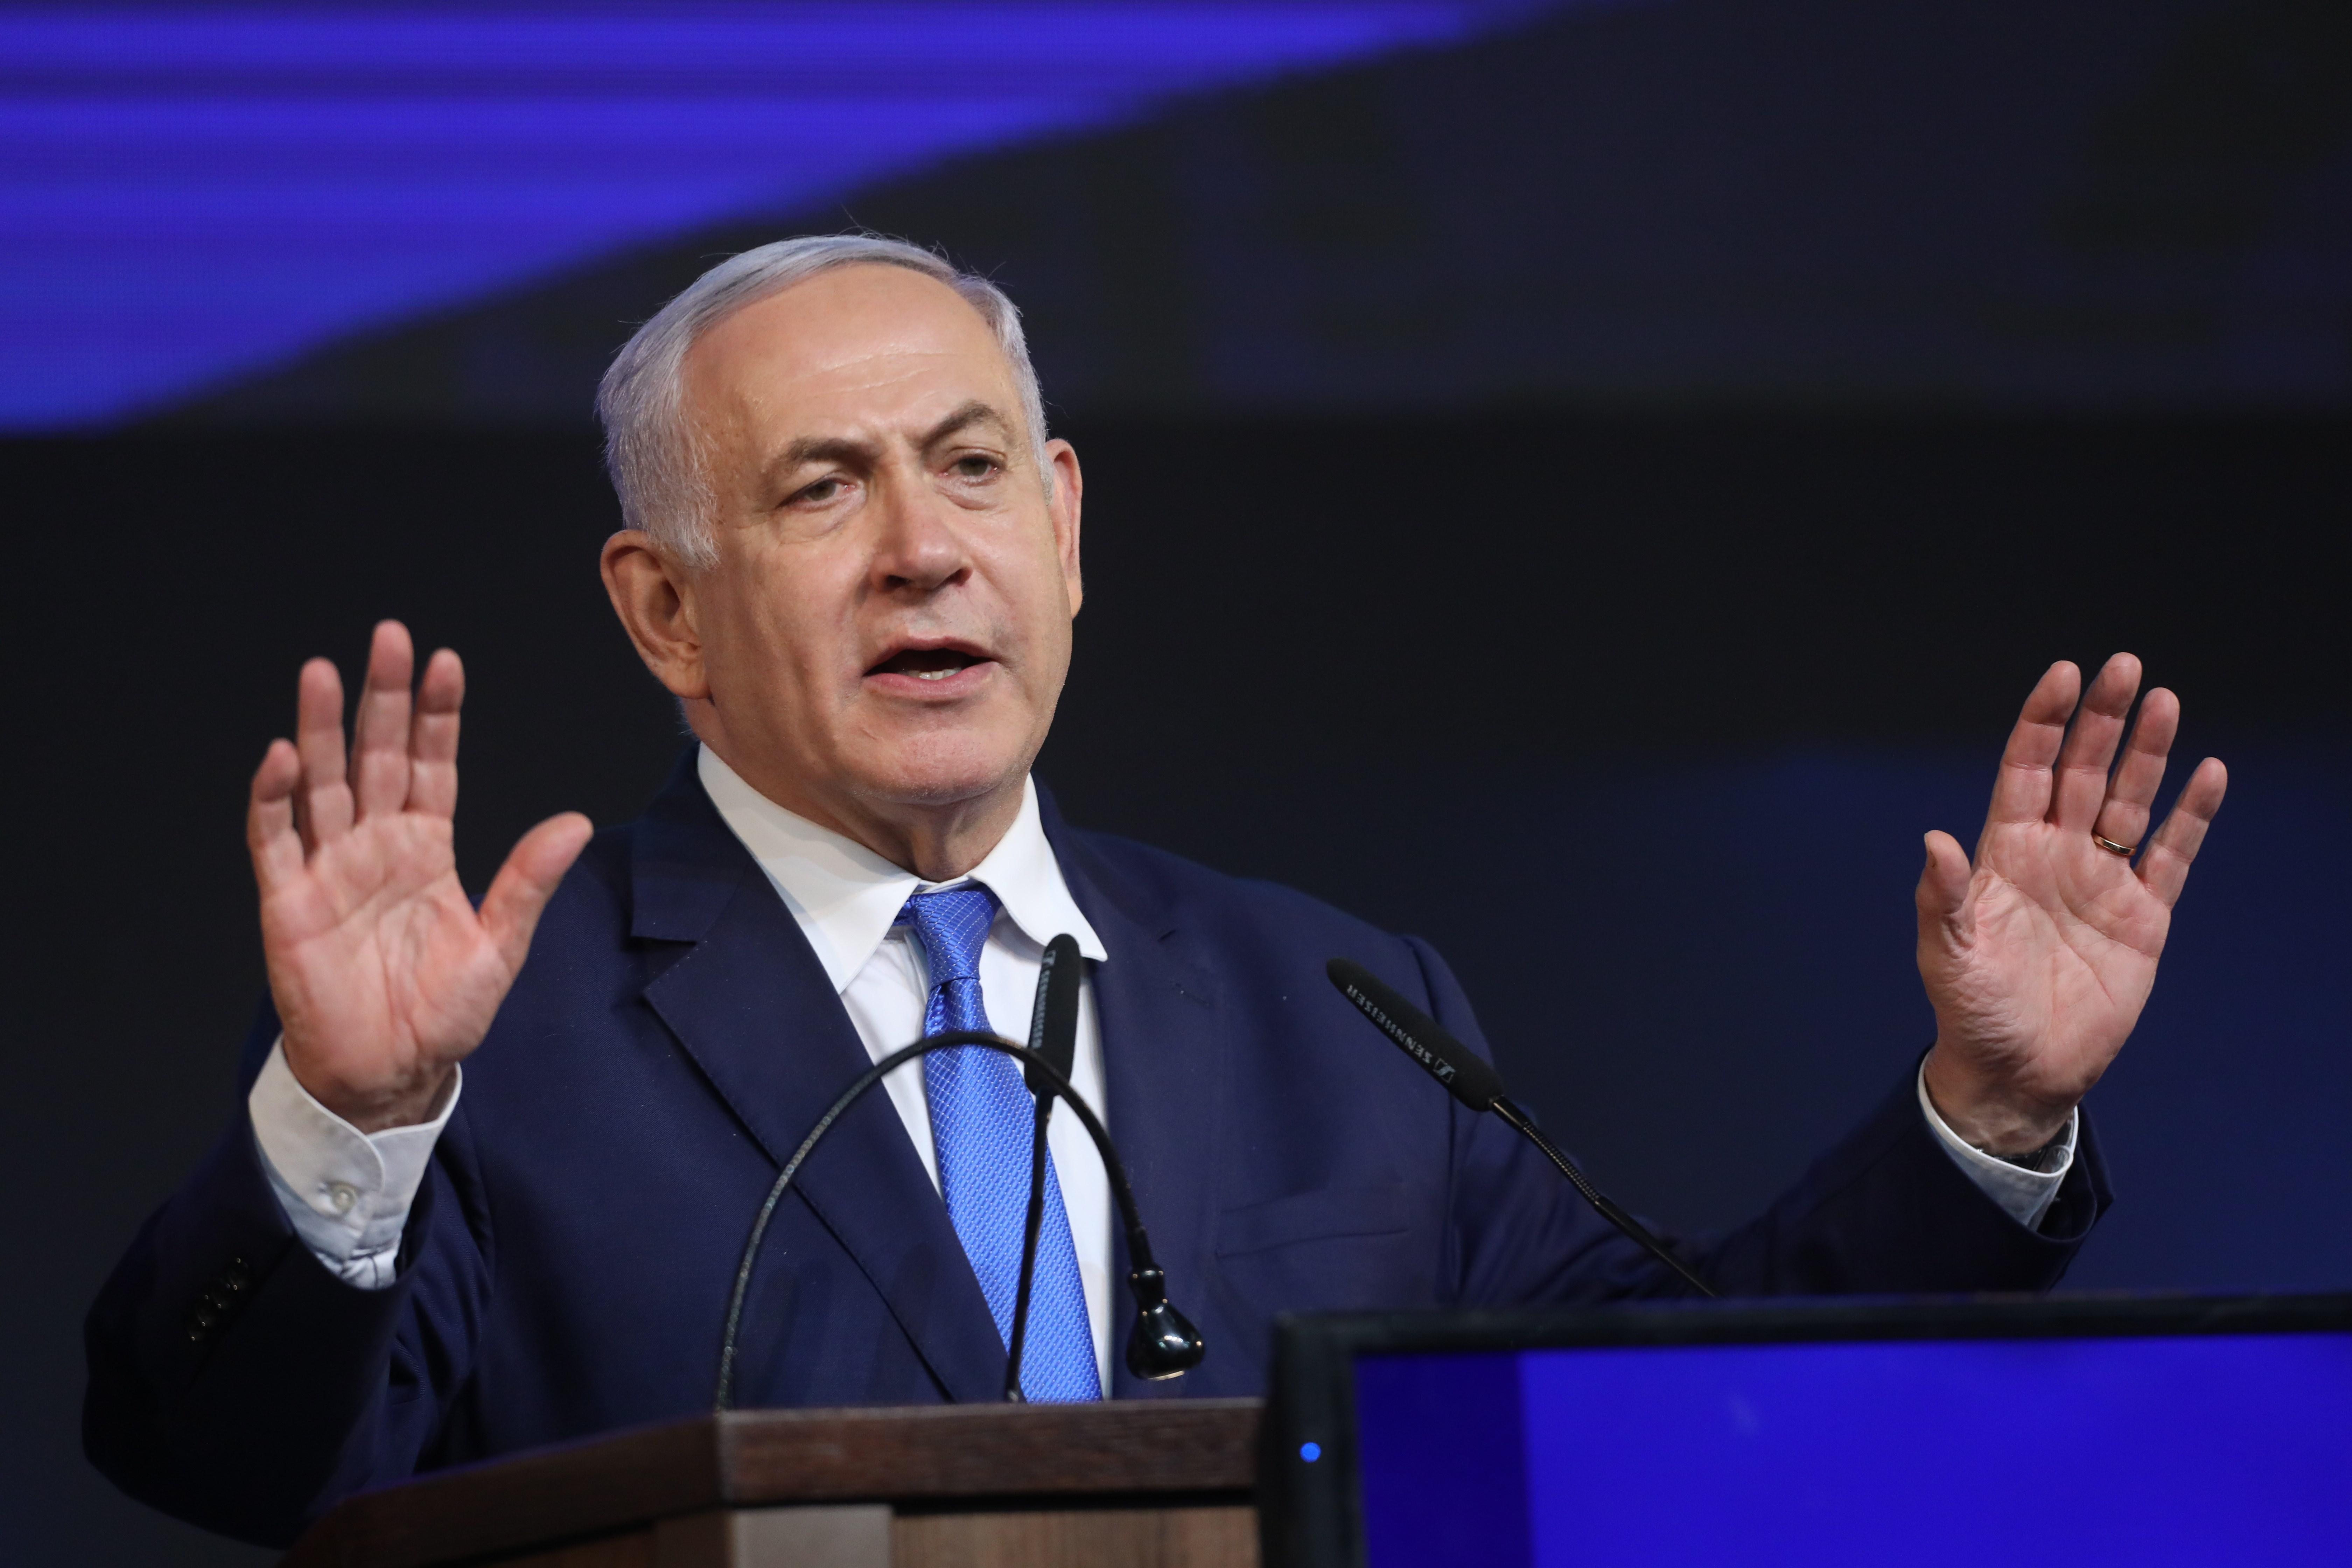 Recuento final de votos tras revisión en Israel confirma victoria de Netanyahu